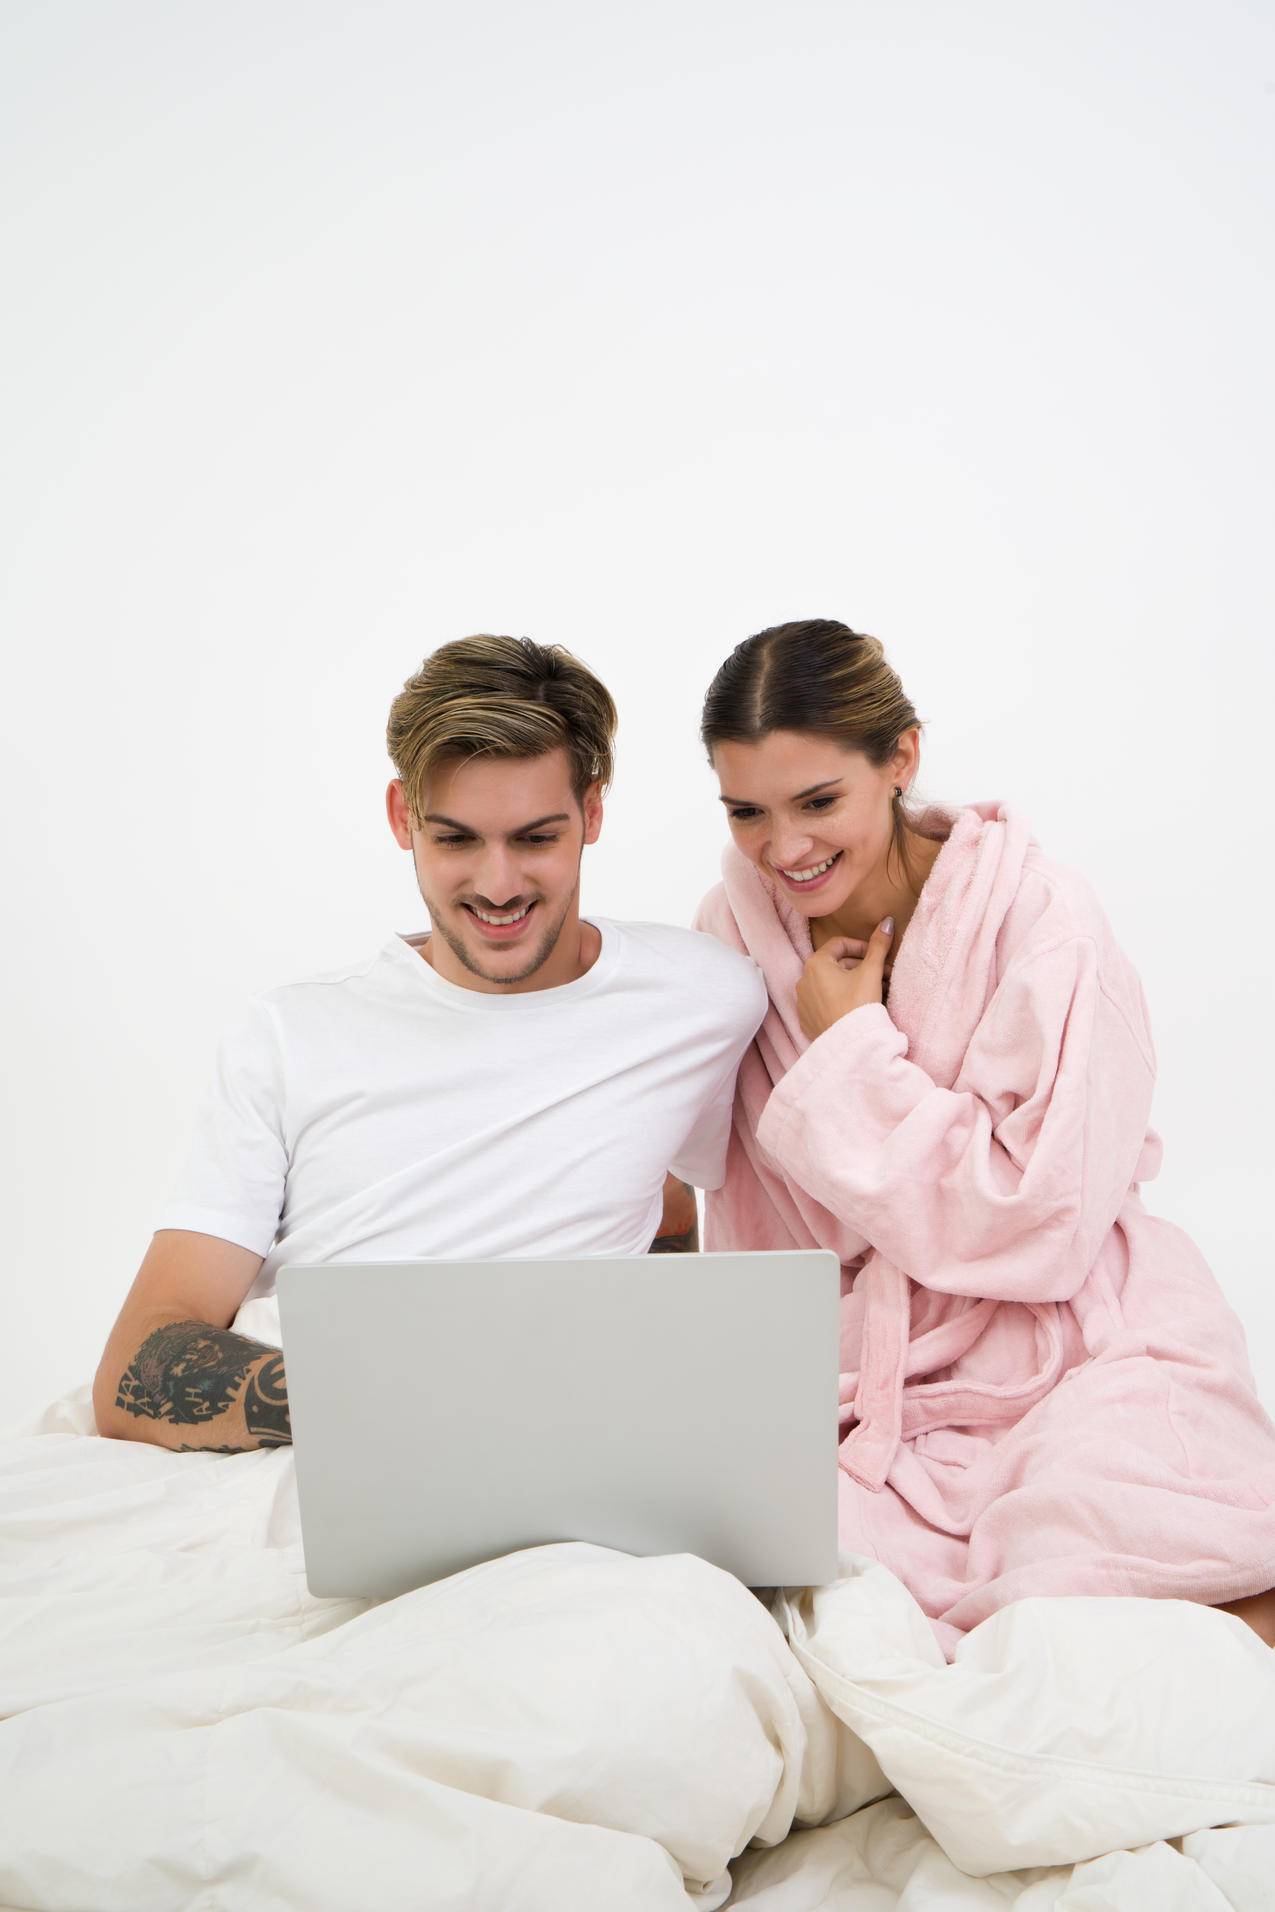 穿着白色工作服的男人坐在床旁,穿着粉红色浴衣的女人看着笔记本电脑